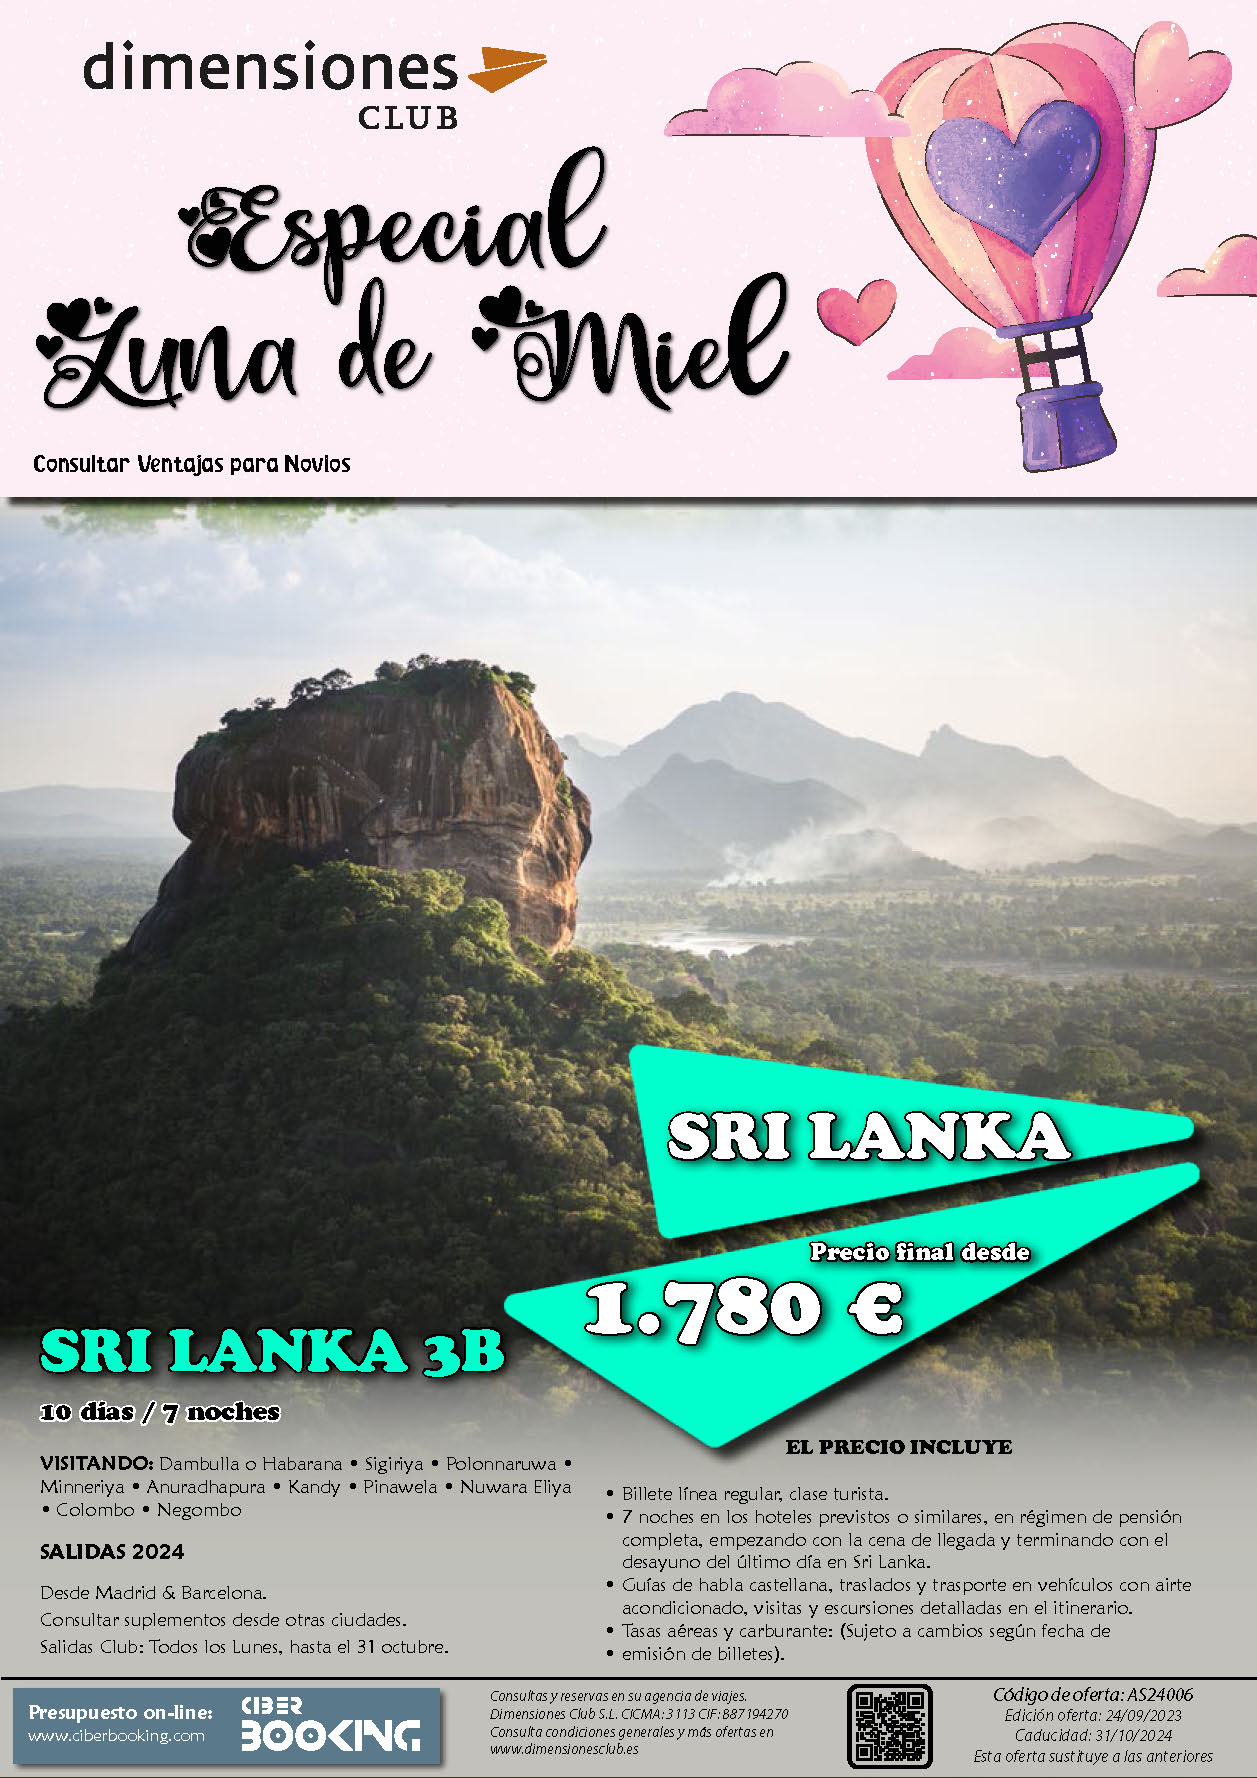 Oferta Dimensiones Club Luna de Miel en Sri Lanka 3B 10 dias salidas desde Madrid y Barcelona Enero a Octubre 2024